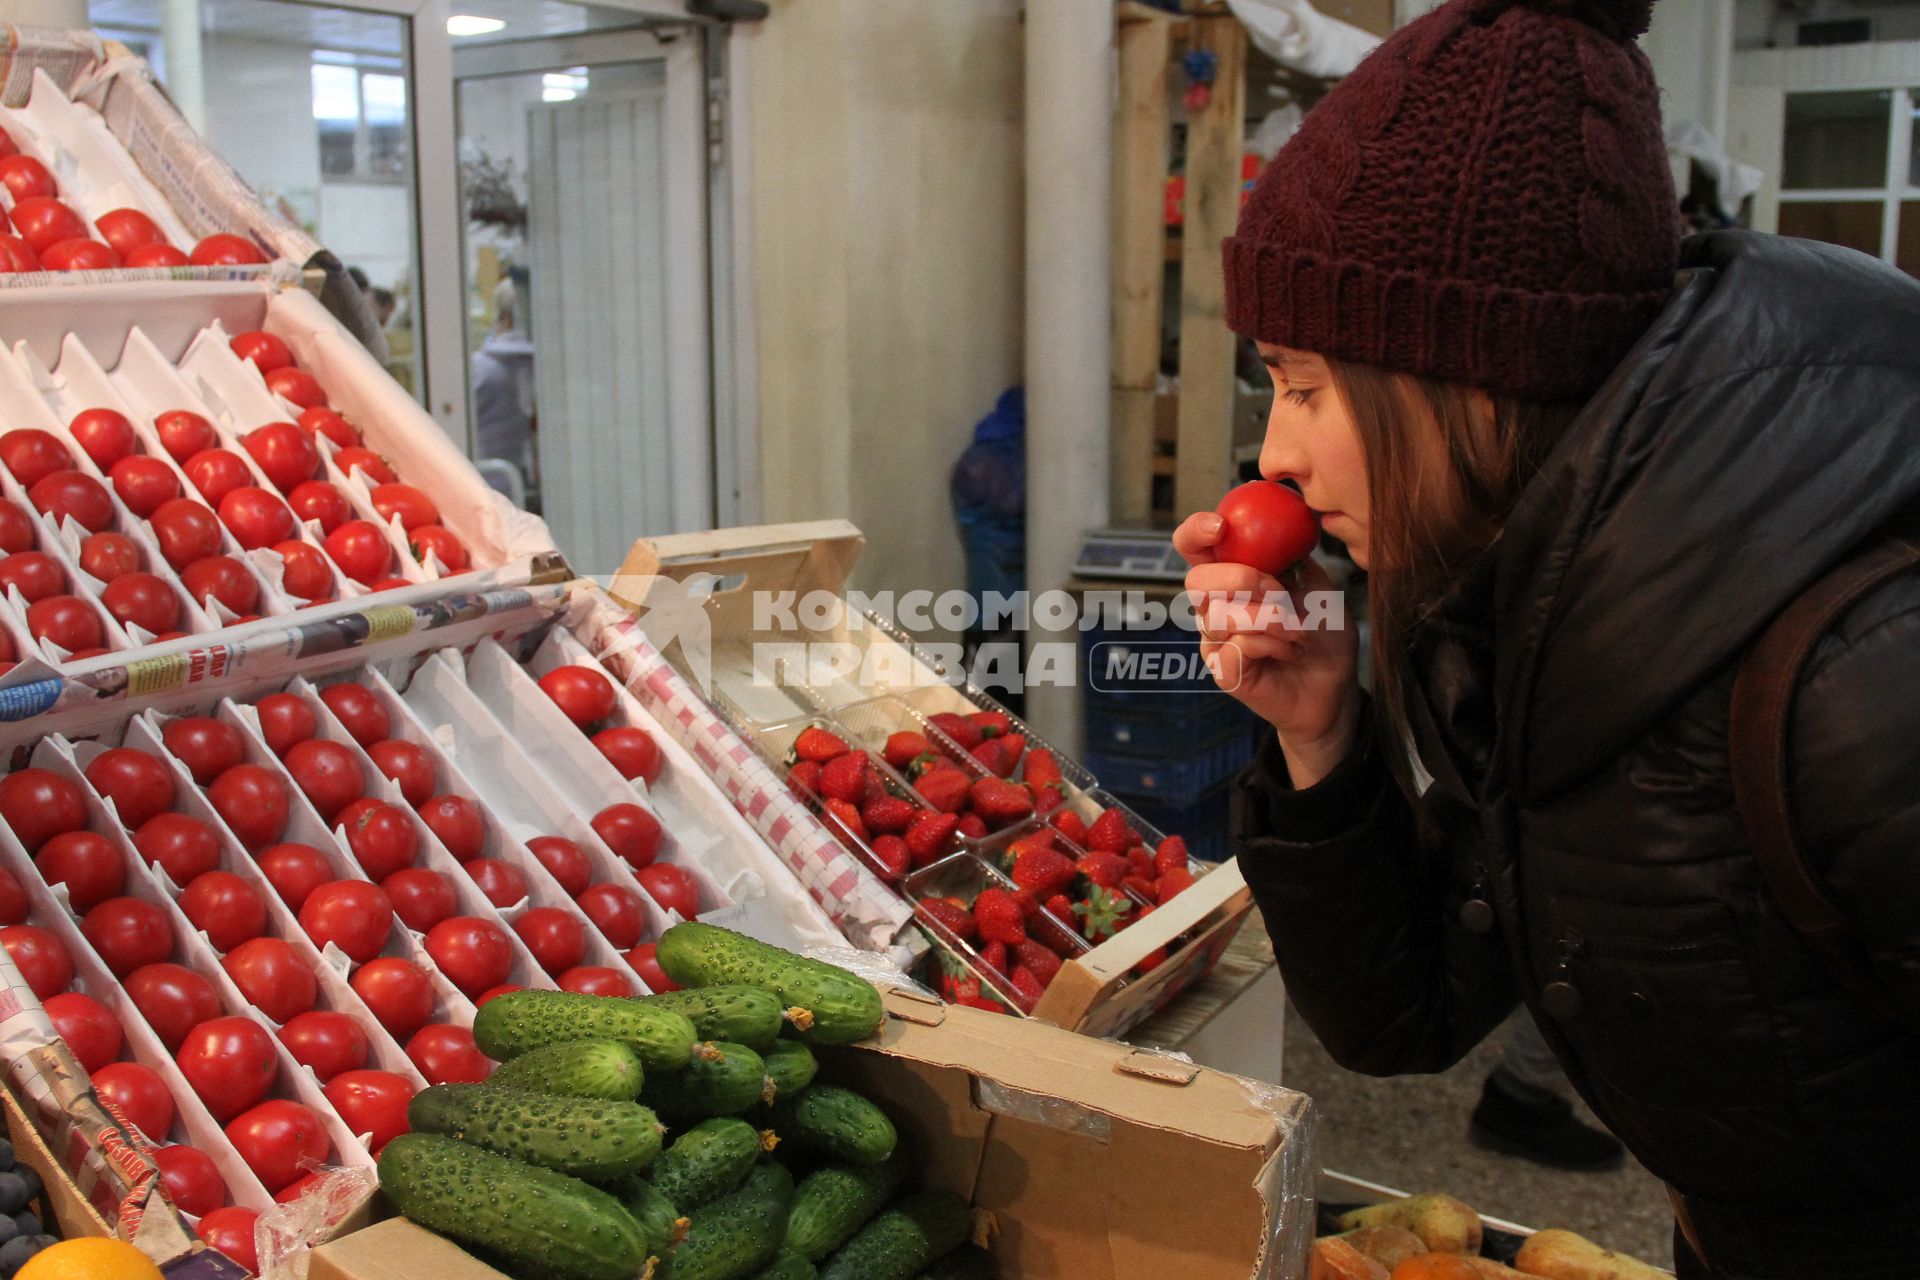 Нижний Новгород. Девушка выбирает помидоры на рынке.